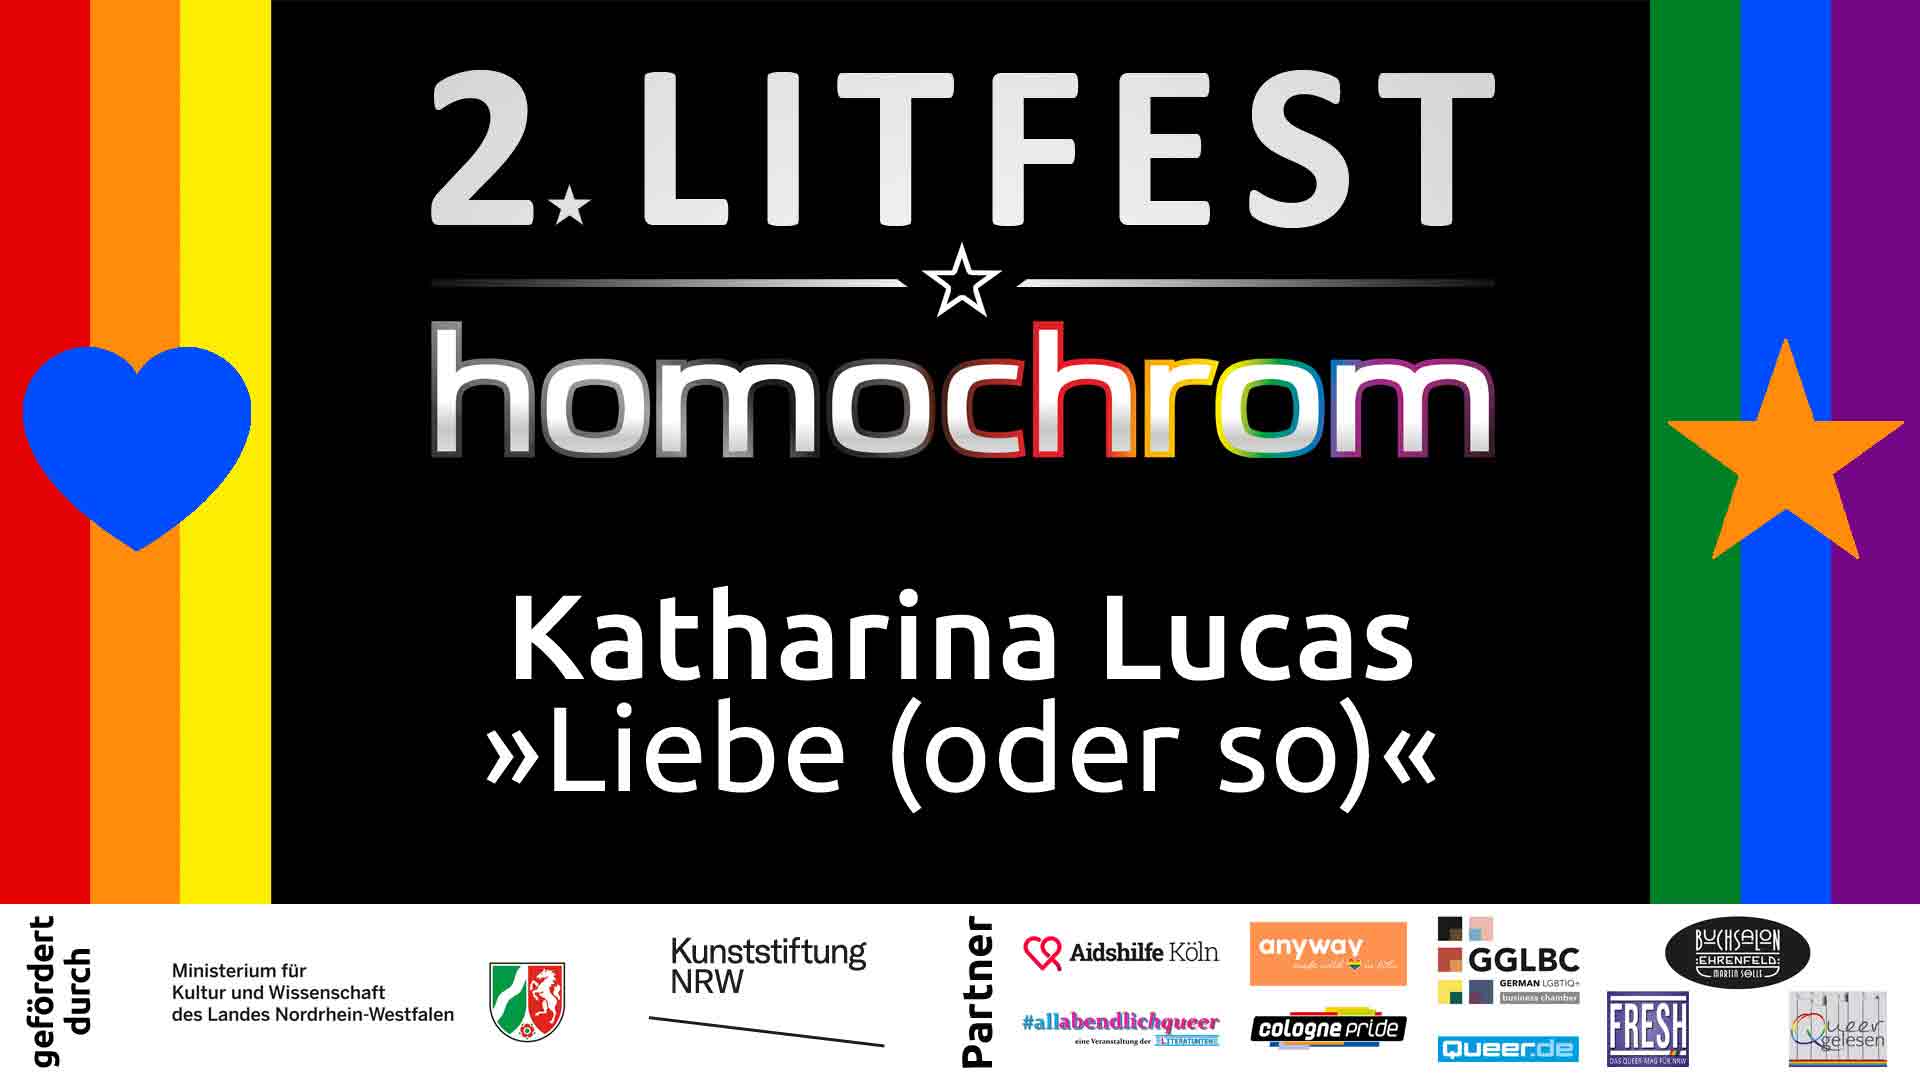 Youtube Video, Katharina Lucas, 2. Litfest homochrom